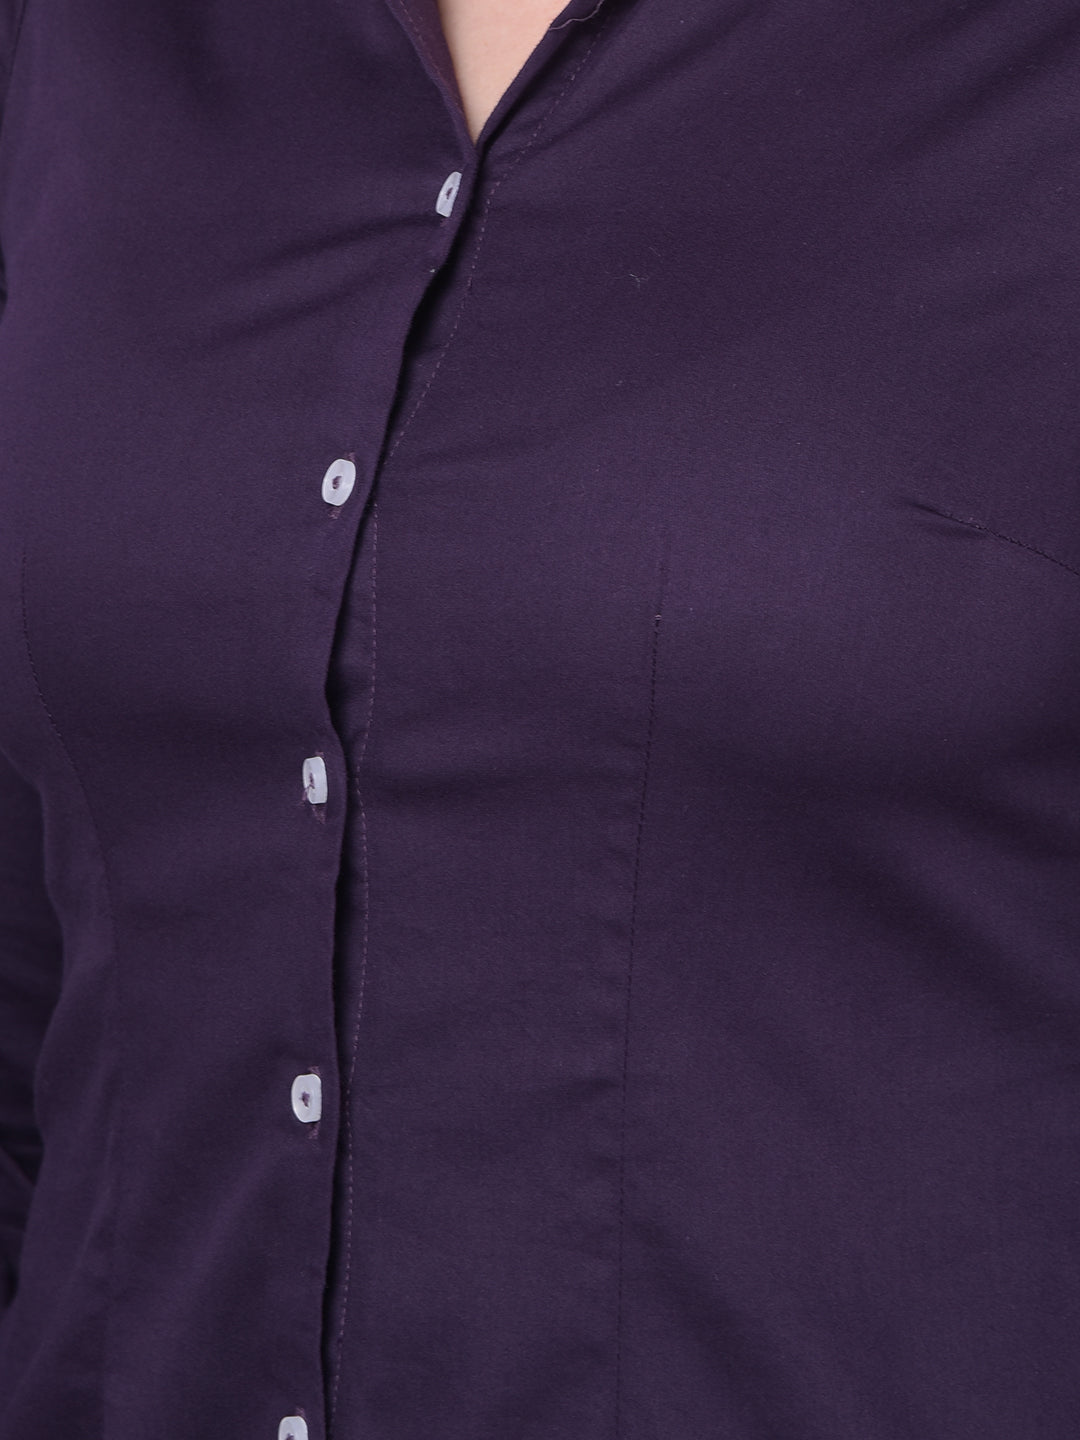 Purple Shirt-Women Shirts-Crimsoune Club